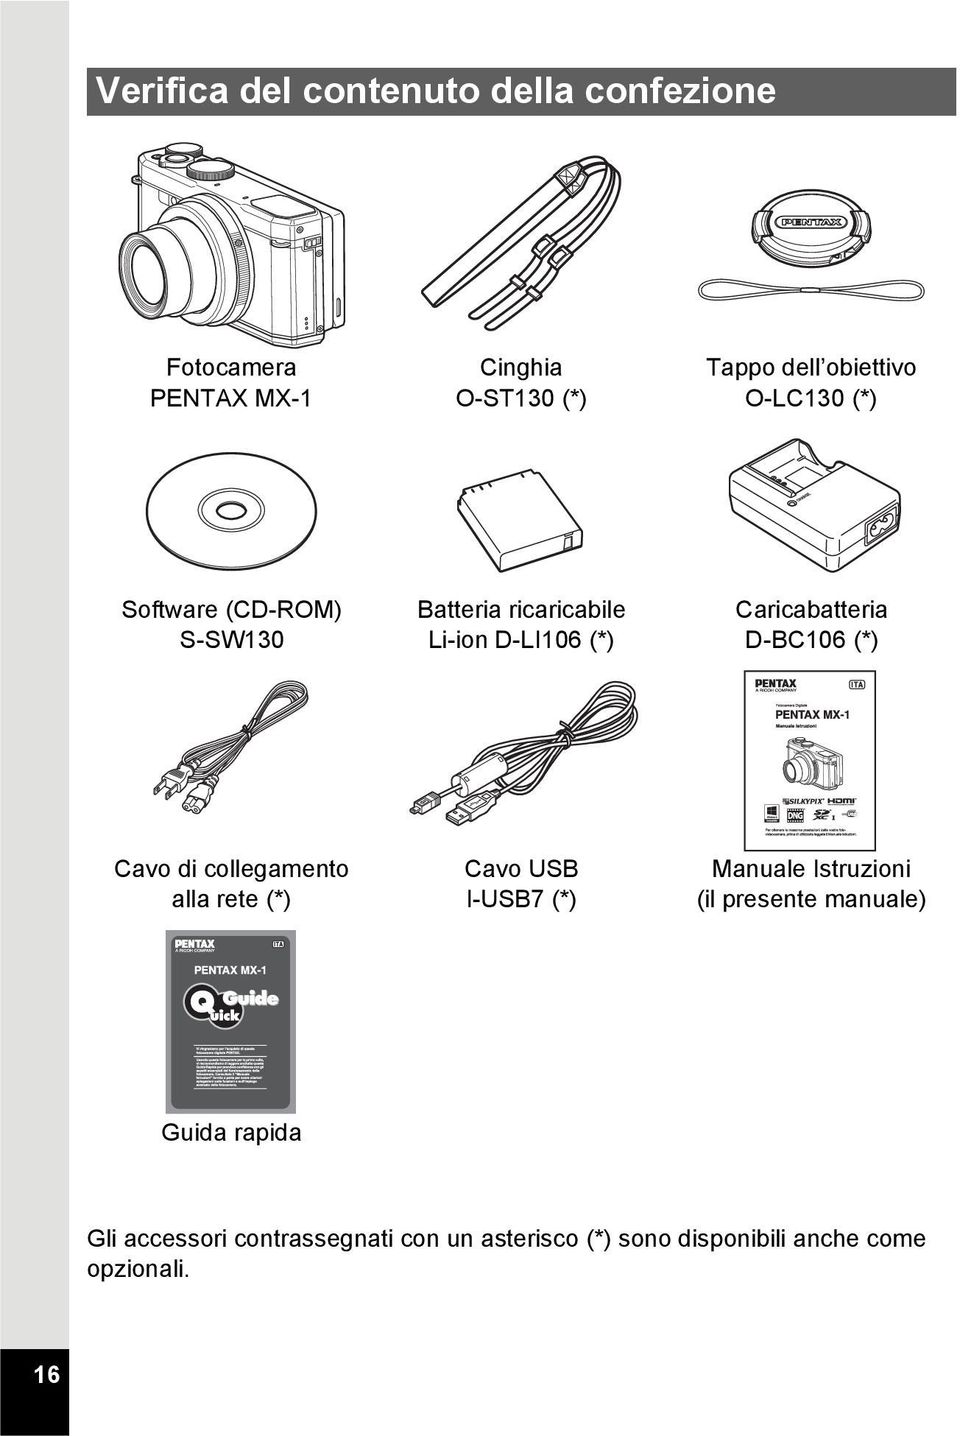 Caricabatteria D-BC106 (*) Cavo di collegamento alla rete (*) Cavo USB I-USB7 (*) Manuale Istruzioni